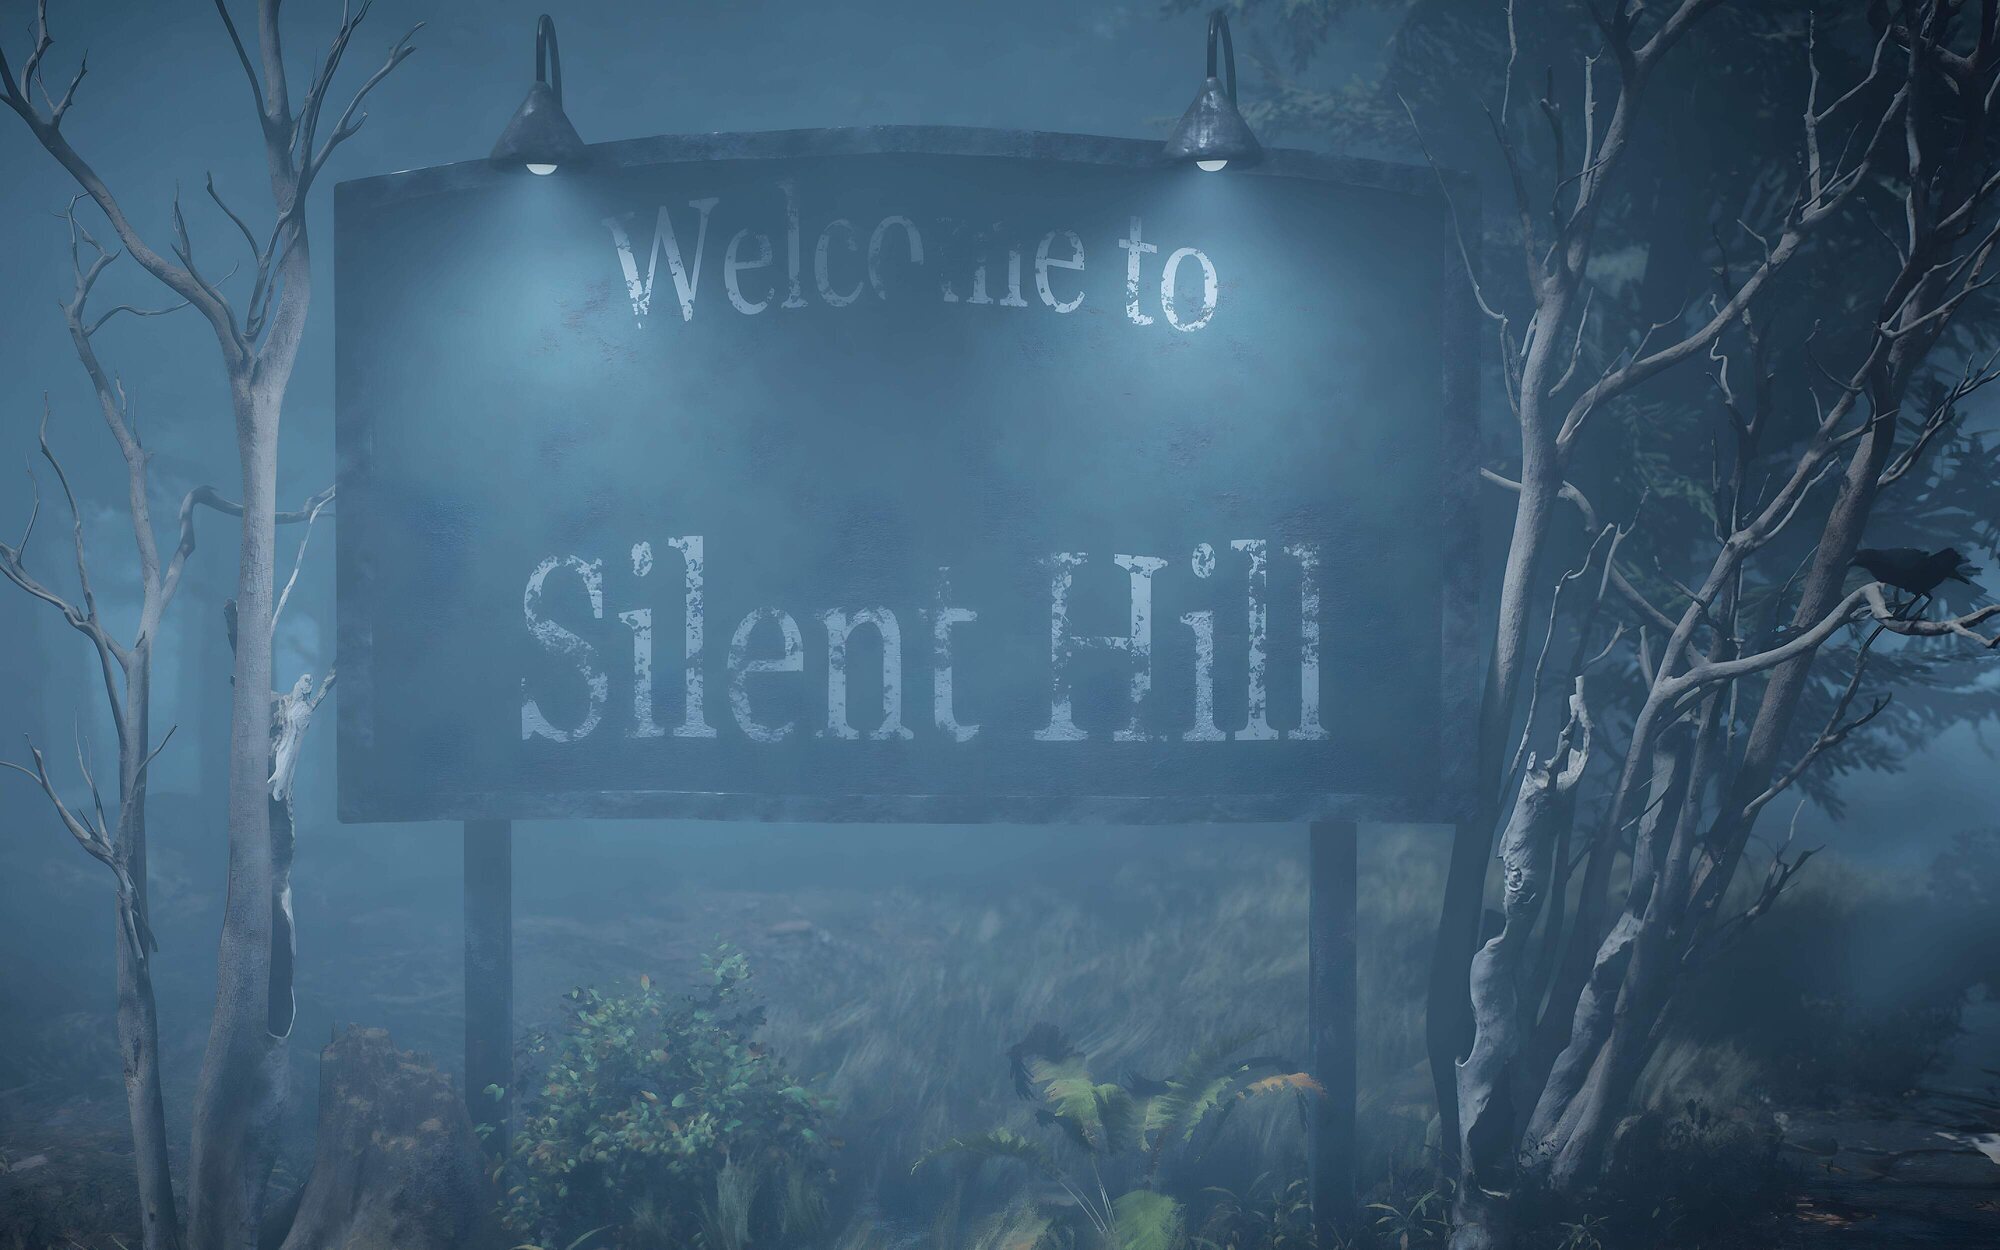 El director de la película de 'Silent Hill' dice que ha escrito un guion para una tercera parte